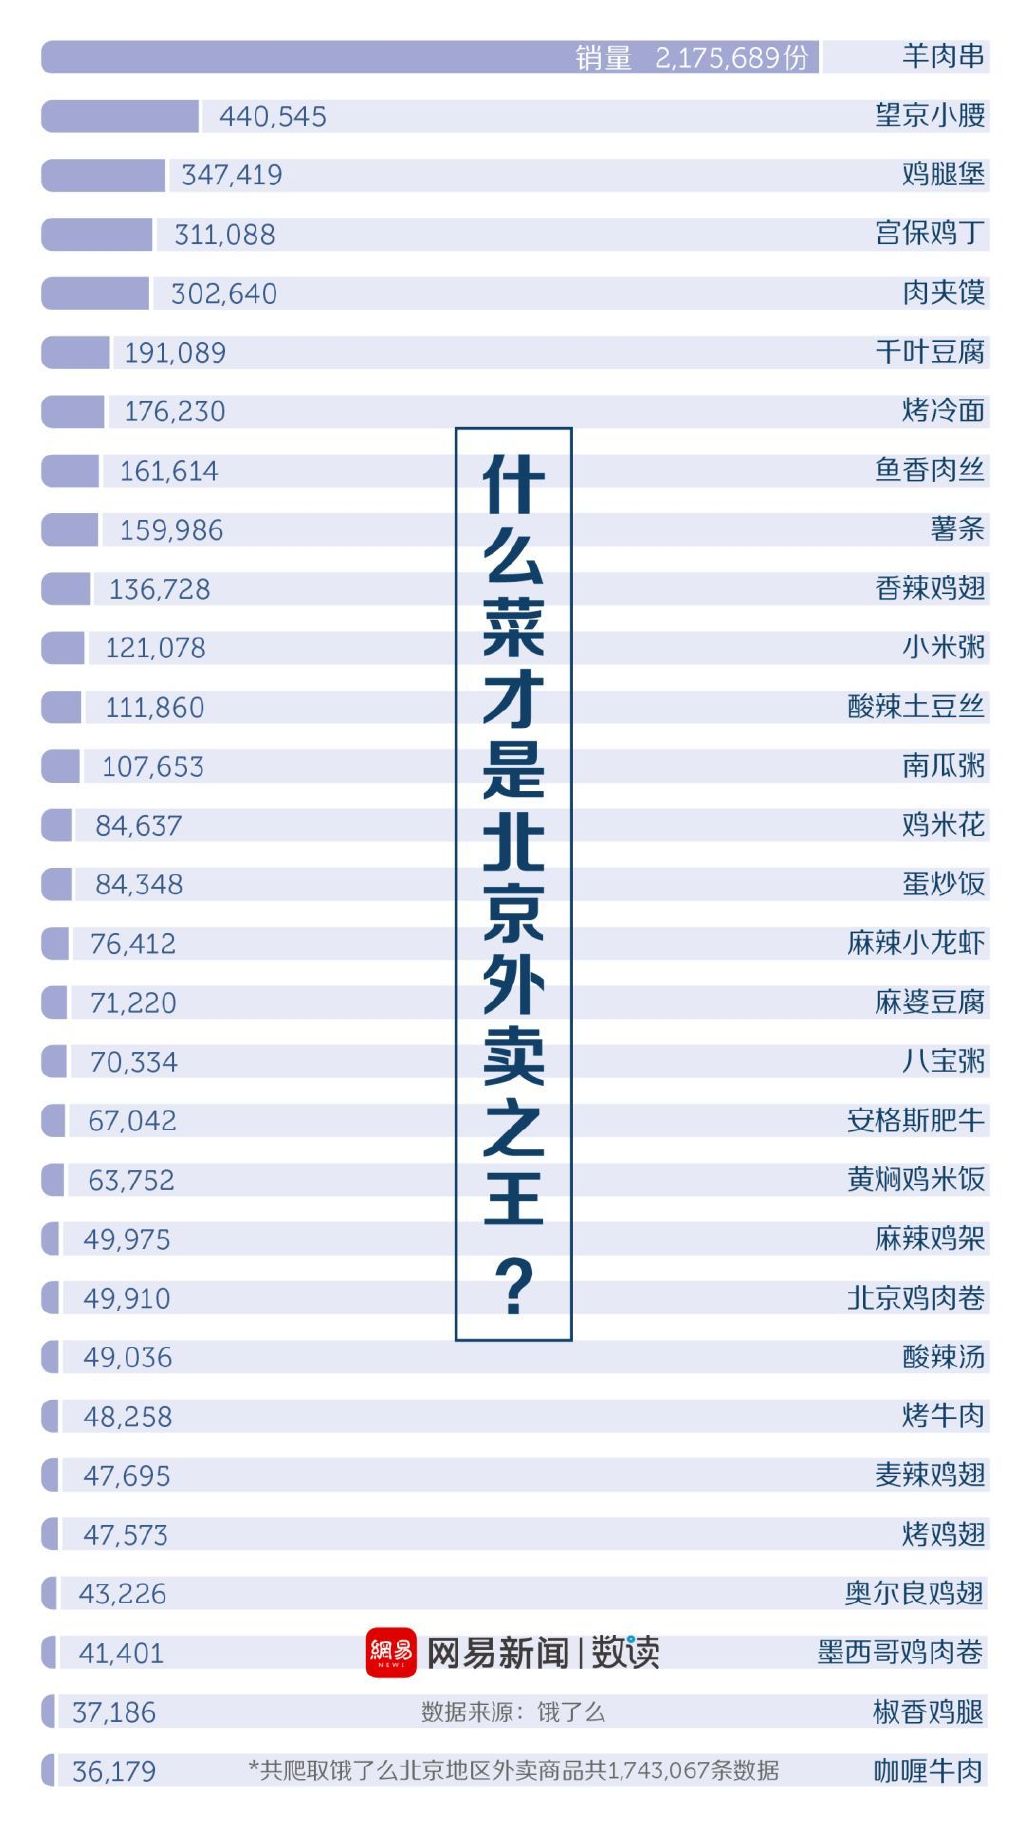 网易数读爬了饿了么上面的174万条数据，得出了北京地区外卖订单的最热门菜品Top 30。